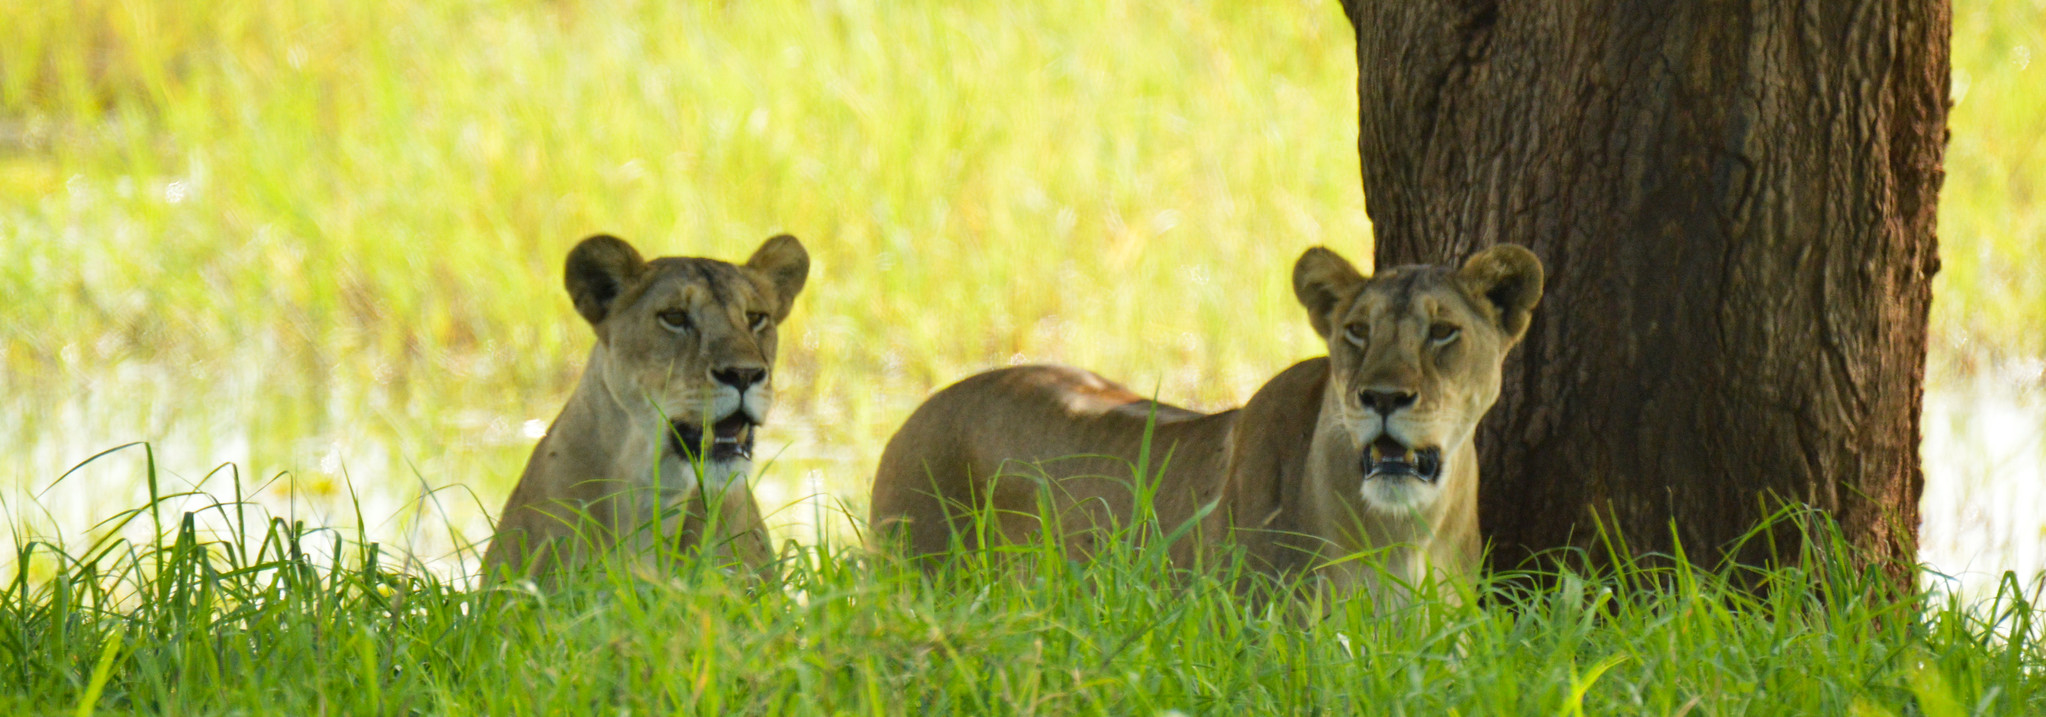 5 Days Wildlife safari in Tanzania